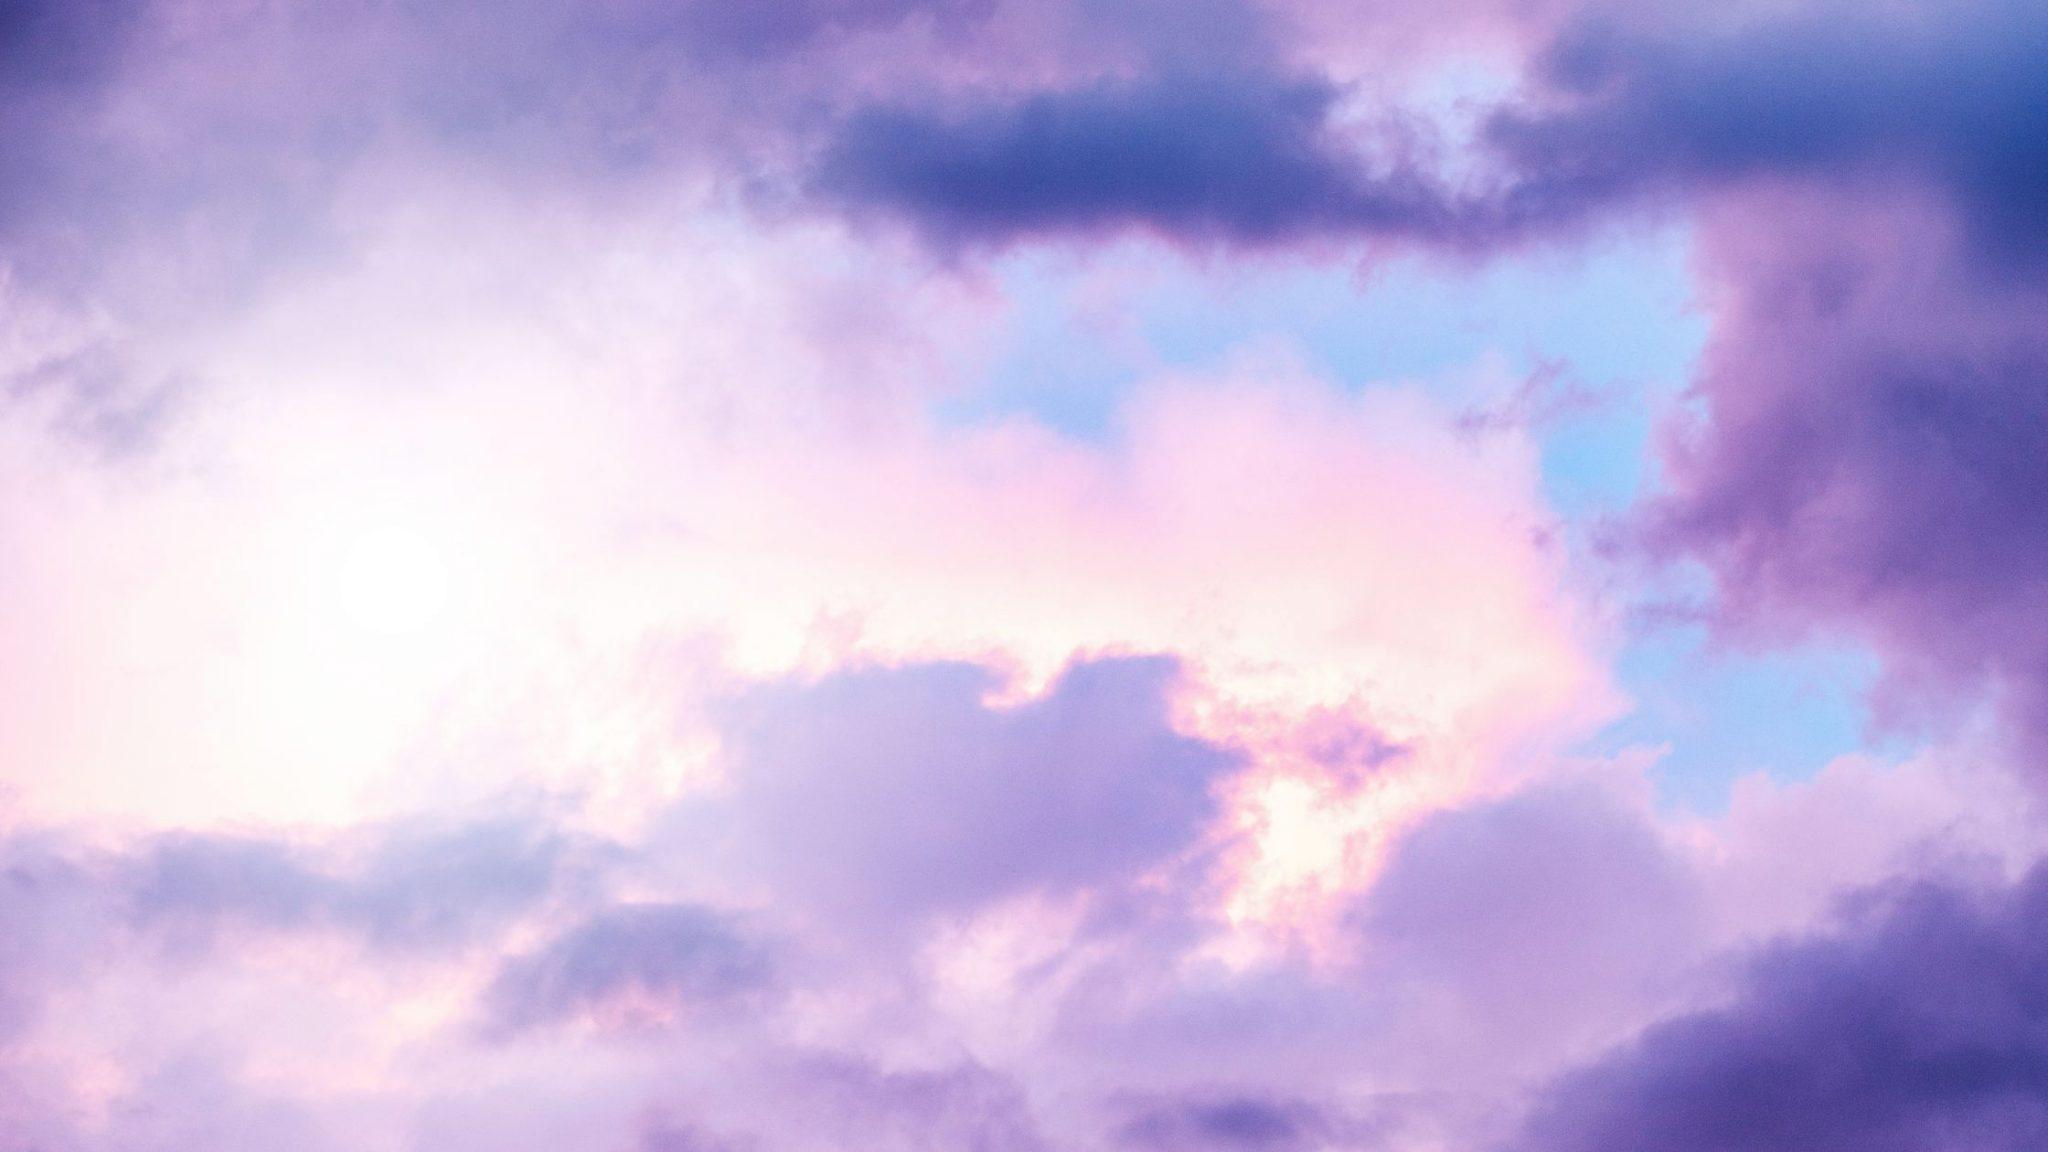 Cloudy purple skies